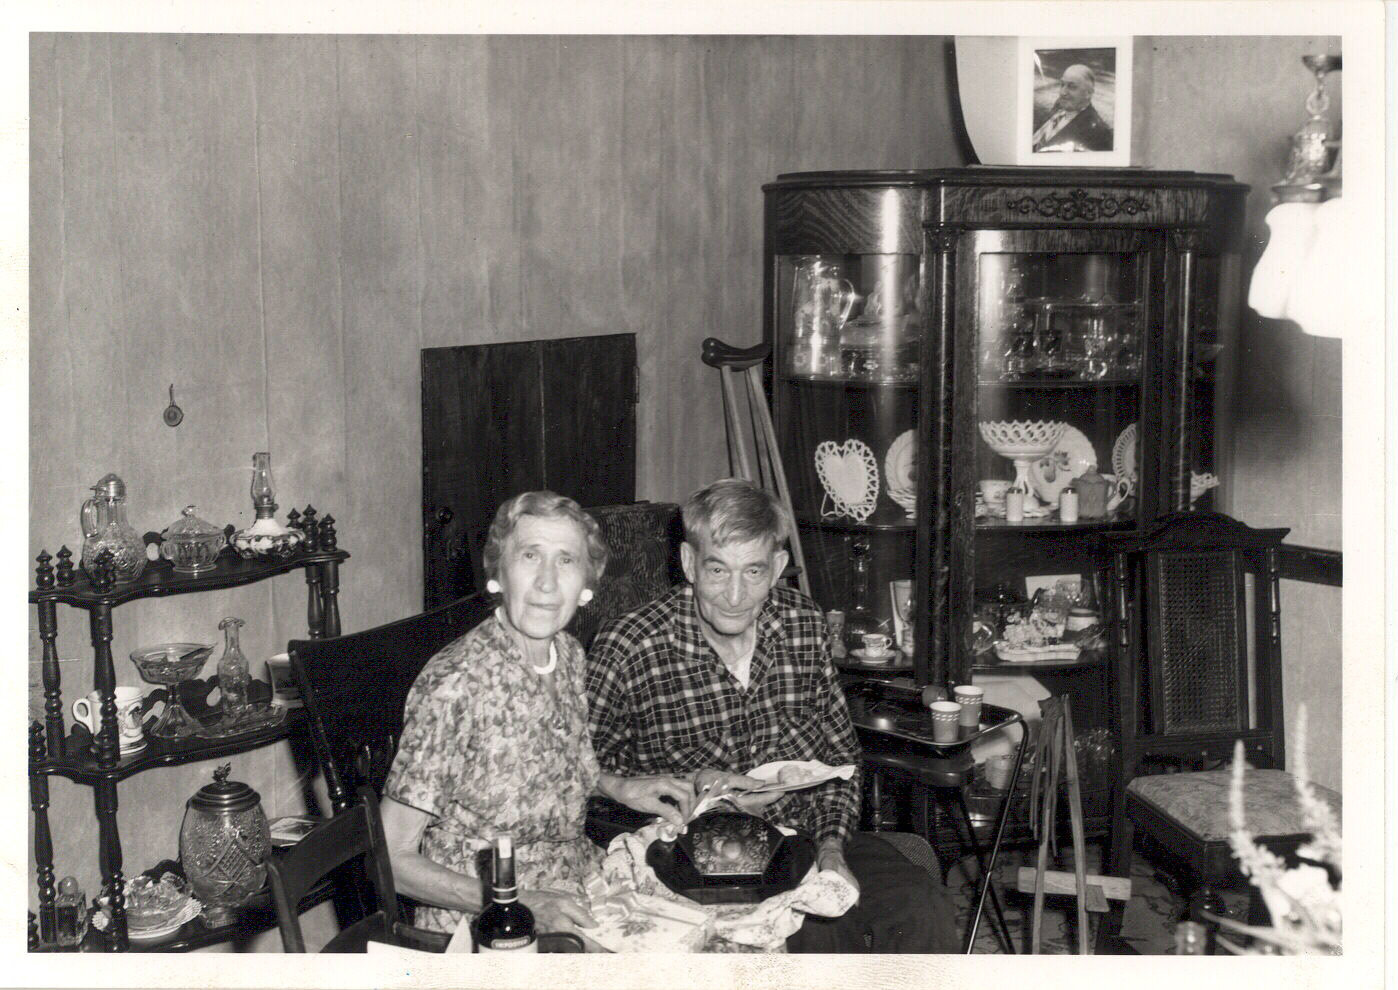 Goet-Lizzie-steve parlor 1960.jpg